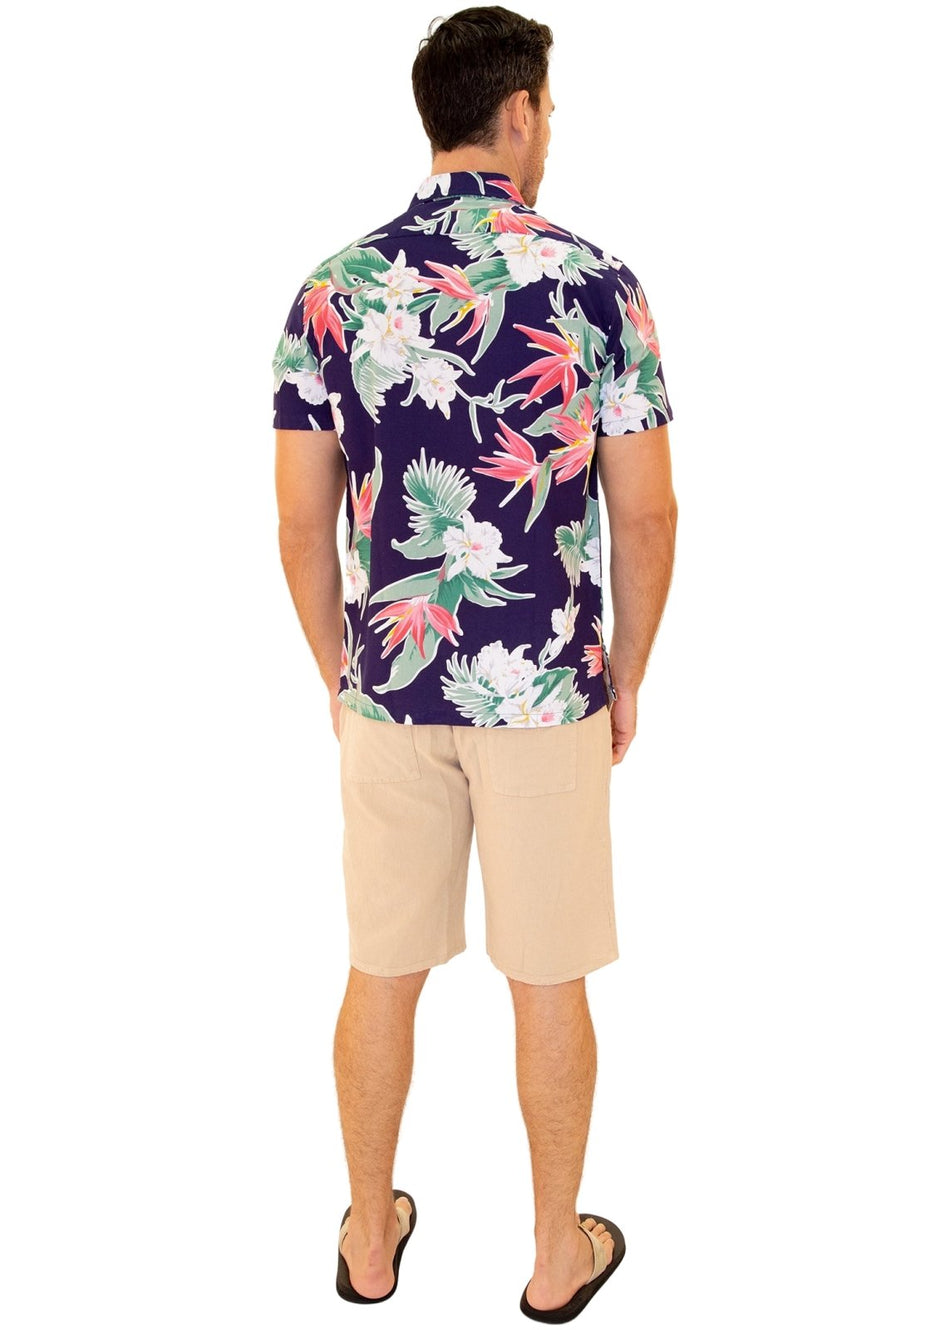 'Turks & Caicos' Hawaiian Shirt Navy - Seaspice Resort Wear